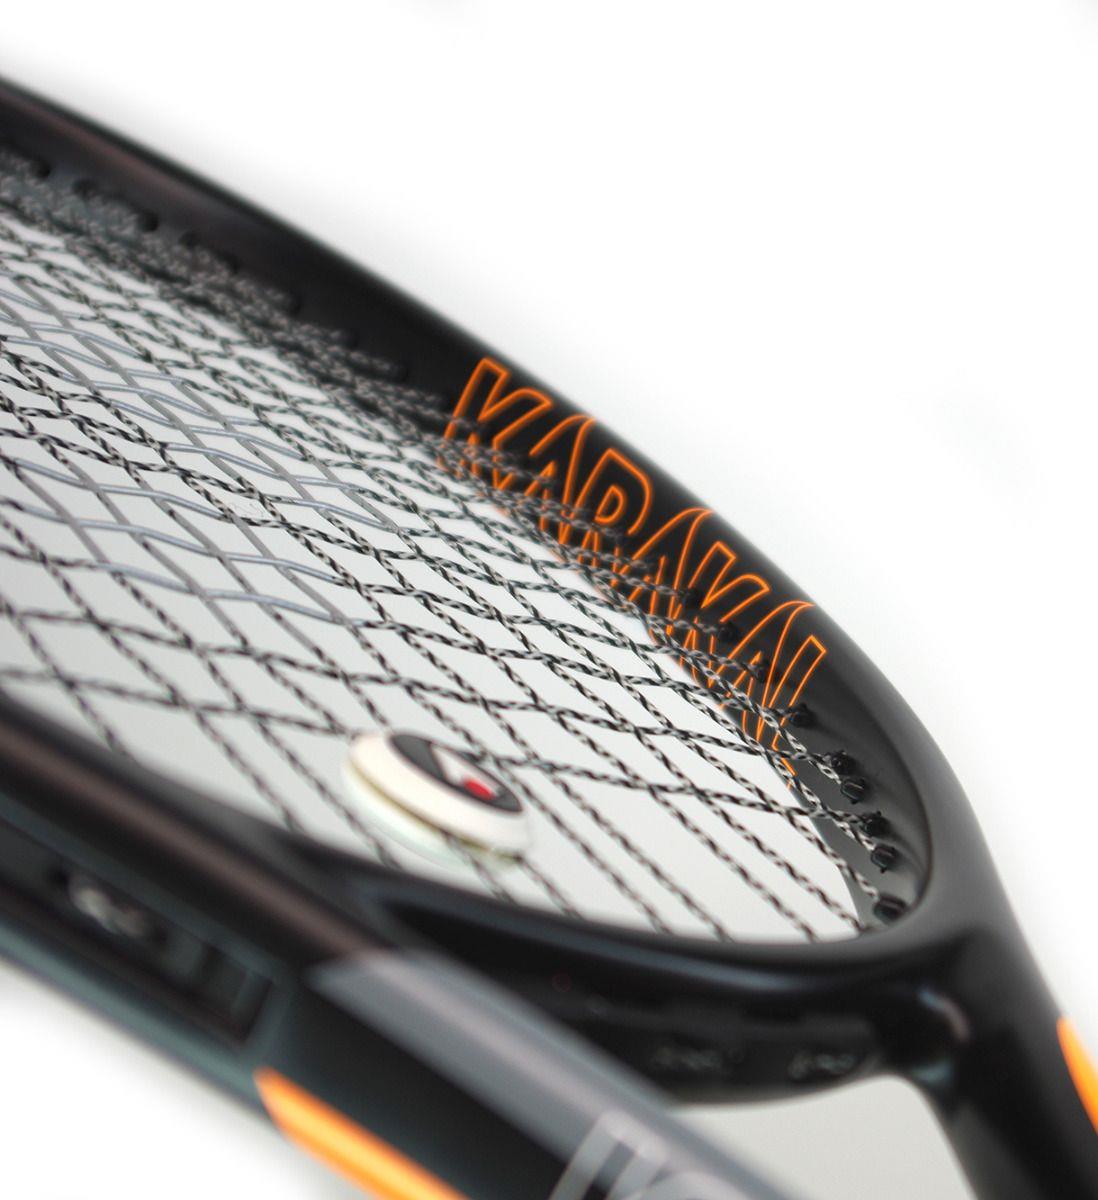 Karakal Graphite Pro 280 Tennis Racket - Black / Yellow